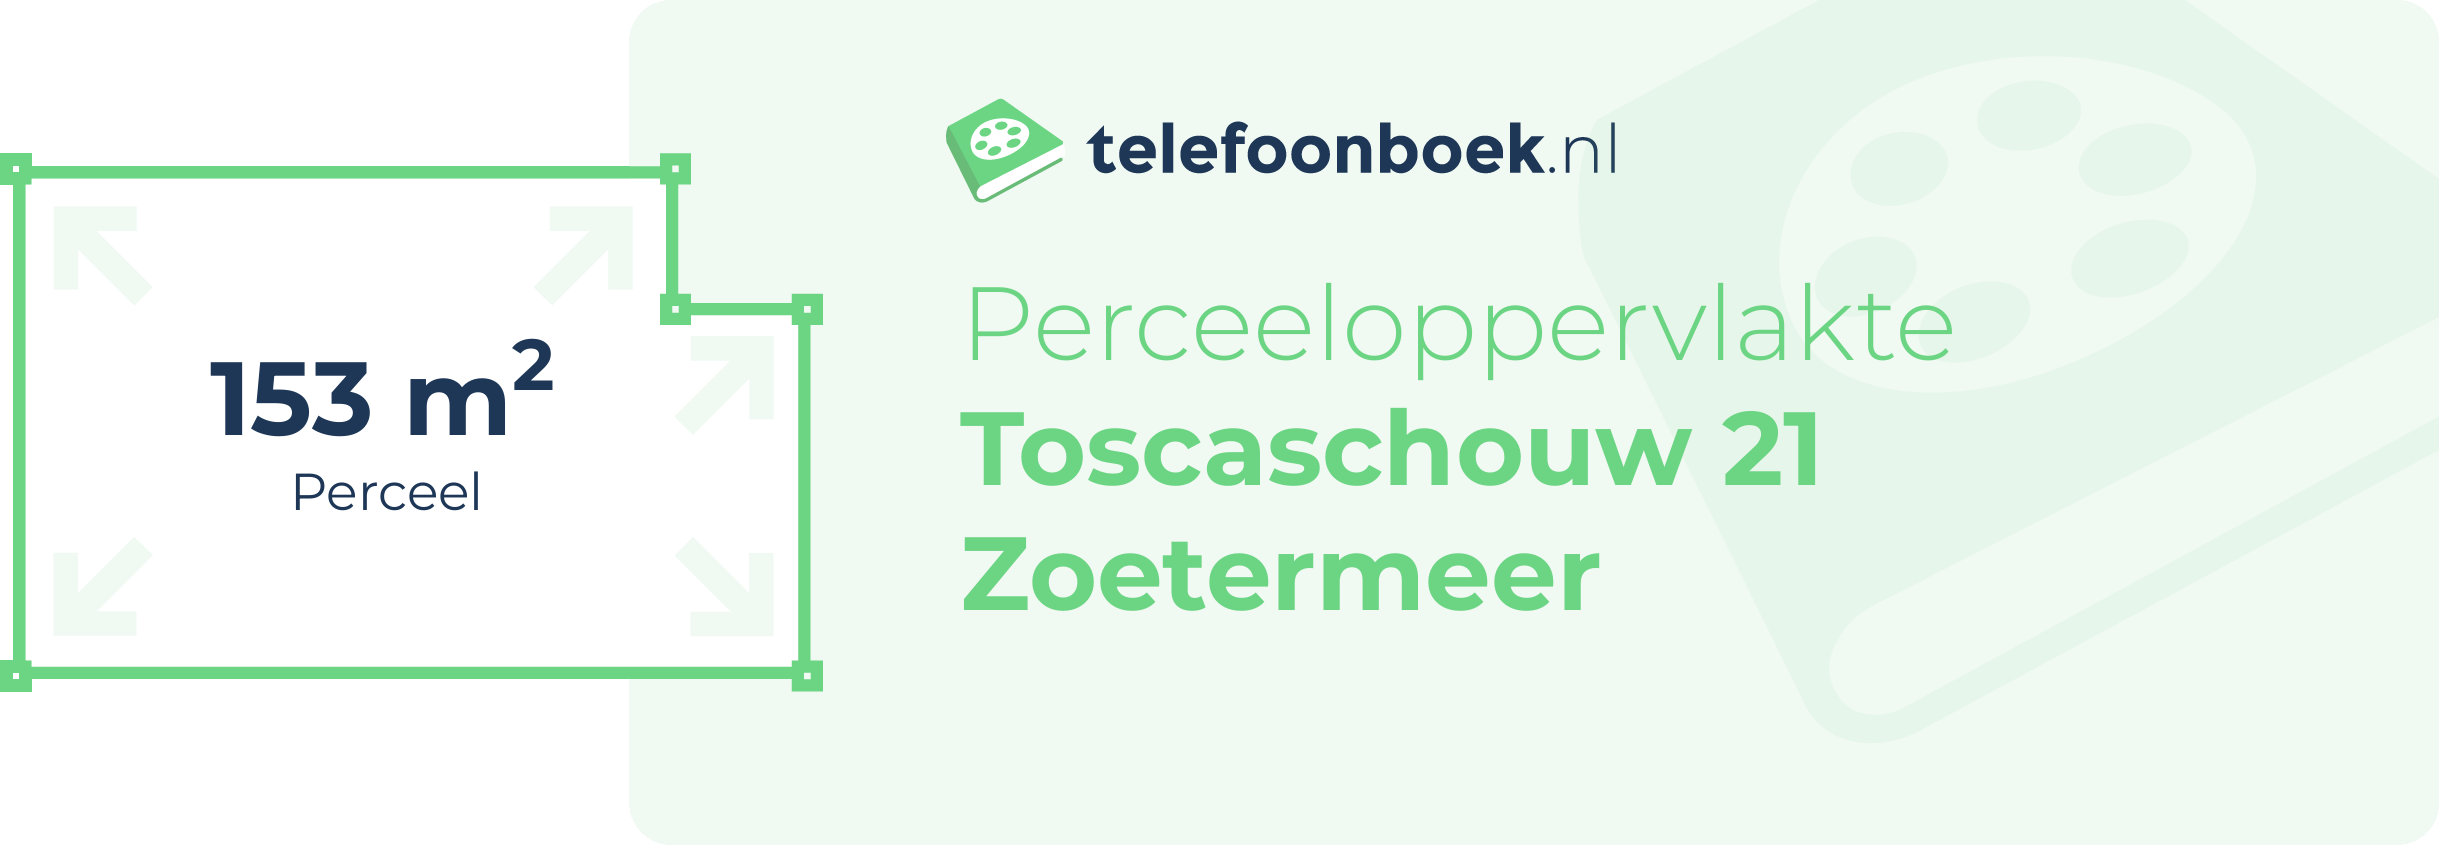 Perceeloppervlakte Toscaschouw 21 Zoetermeer